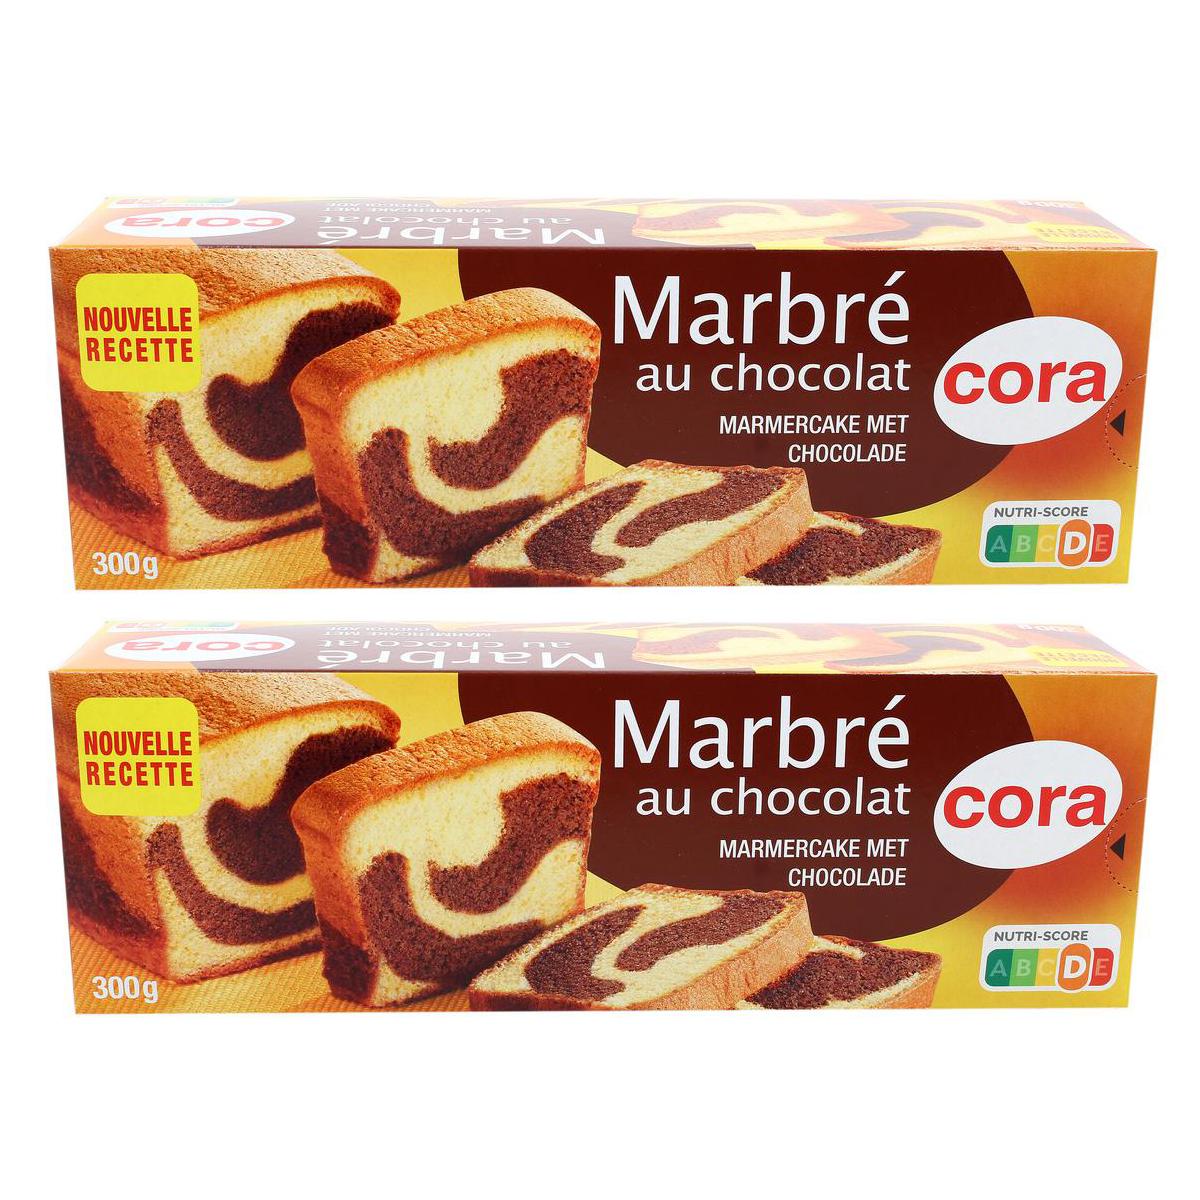 Achat / Vente Promotion Cora Gâteau marbré au chocolat, Lot de 2x300g